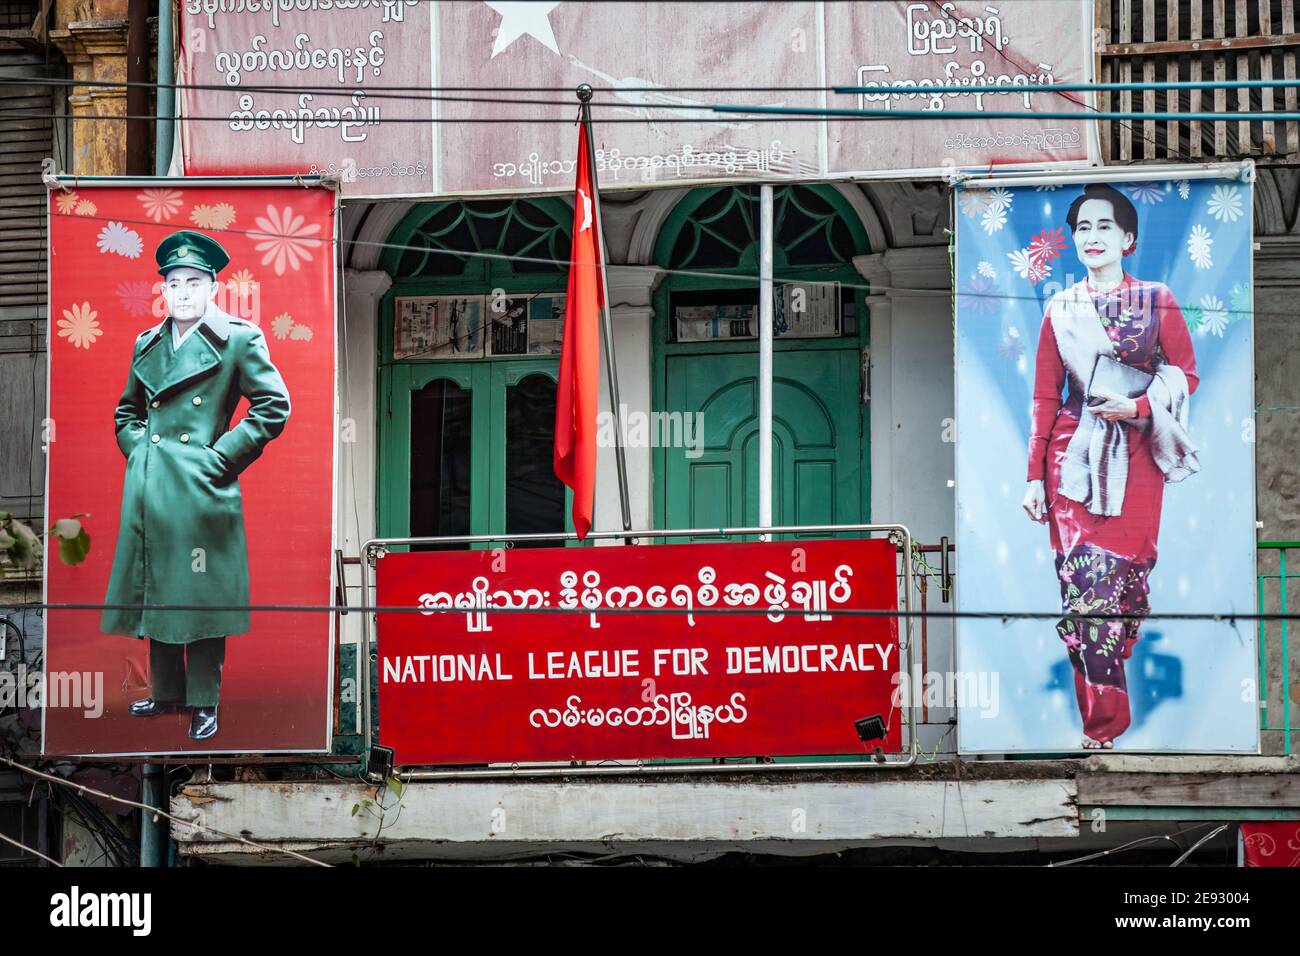 YANGON, MYANMAR - 2. JANUAR 2016: Büro der Nationalen Liga für Demokratie mit Porträts von Aung San und Aung San Suu Kyi in Yangon, Myanmar. Stockfoto